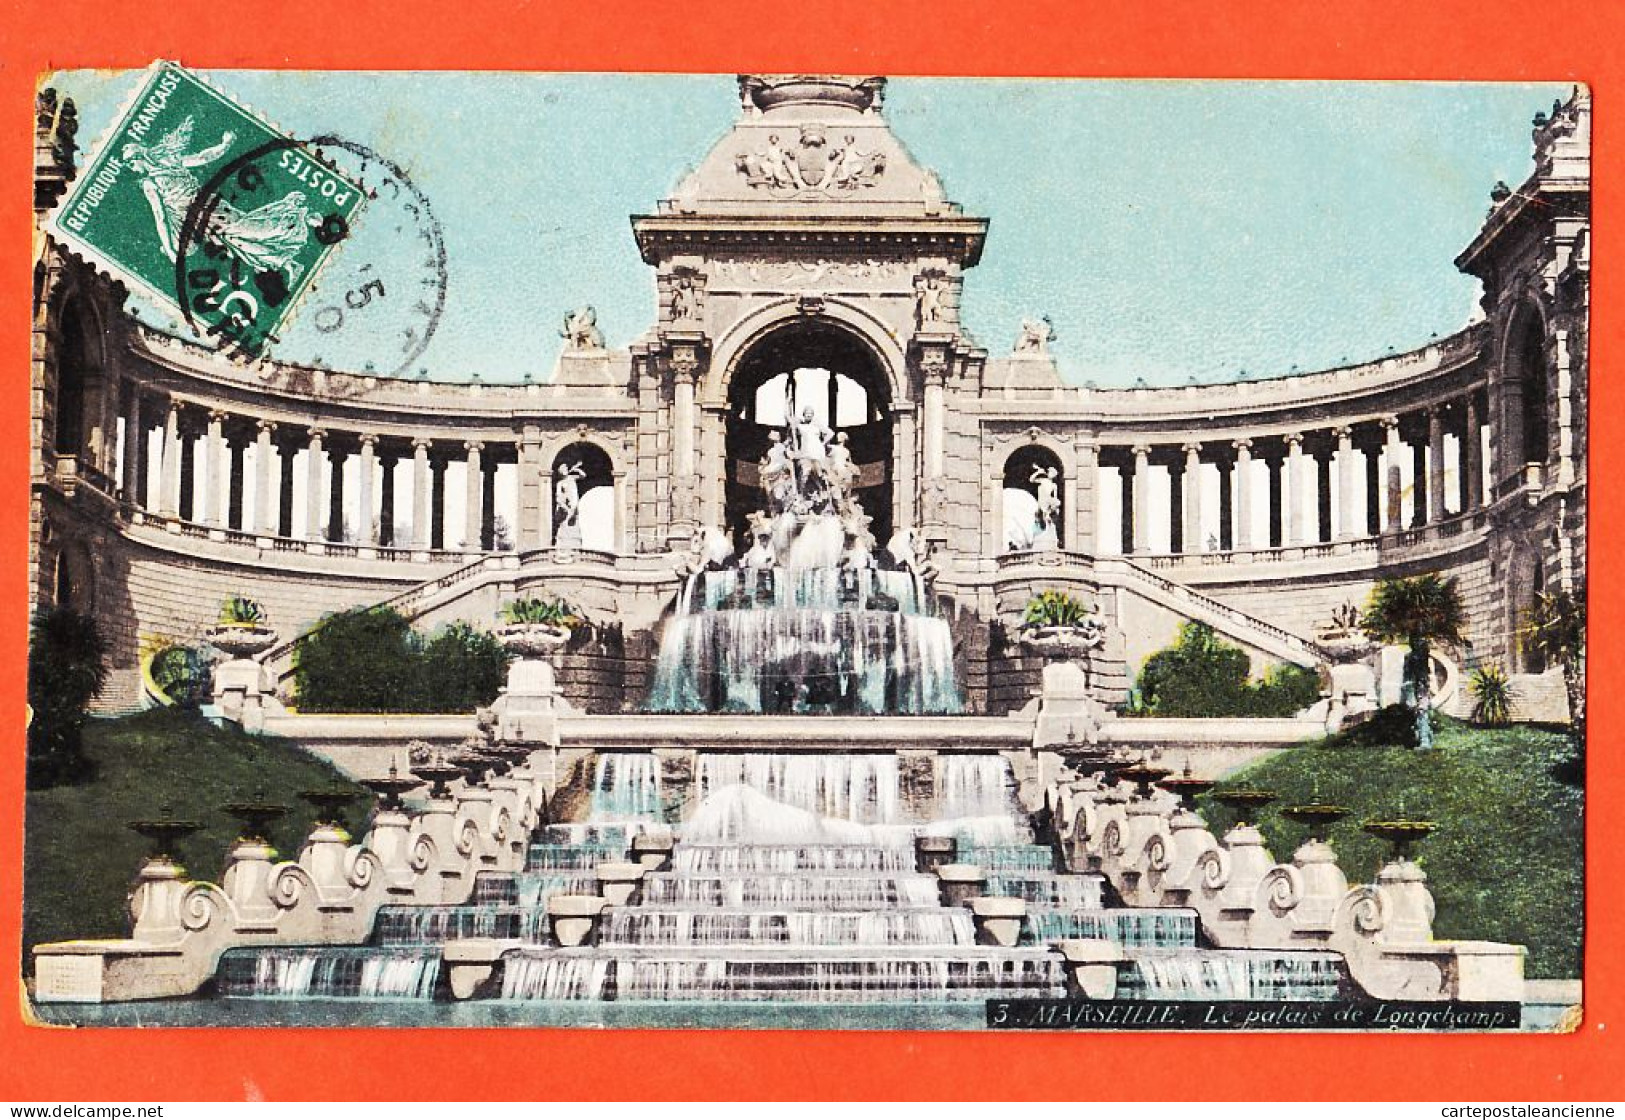 35018 / Aqua-Photo LEOPOLD VERGER 3 MARSEILLE (13) Palais LONGCHAMP 1909 à Honoré VILAREM Caporal 143e Inf - Canebière, Stadtzentrum